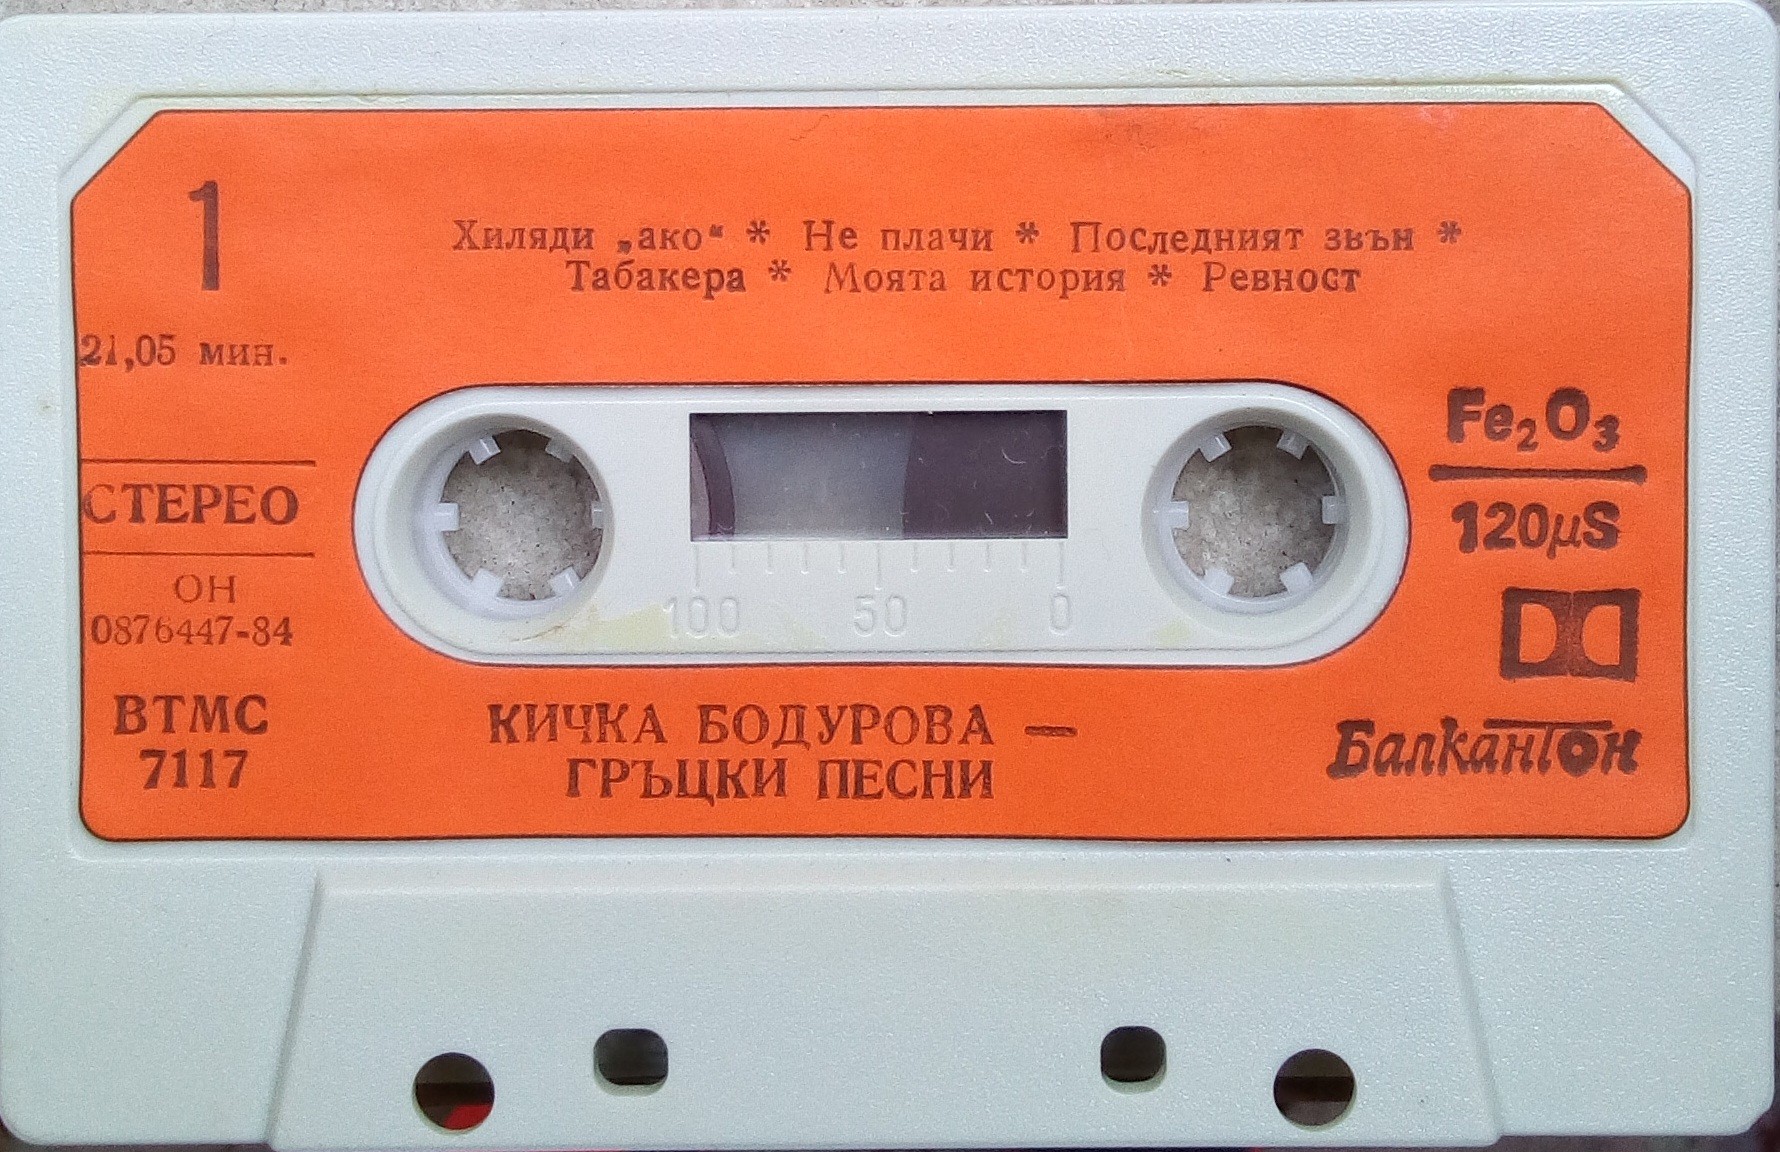 Кичка Бодурова. Гръцки песни